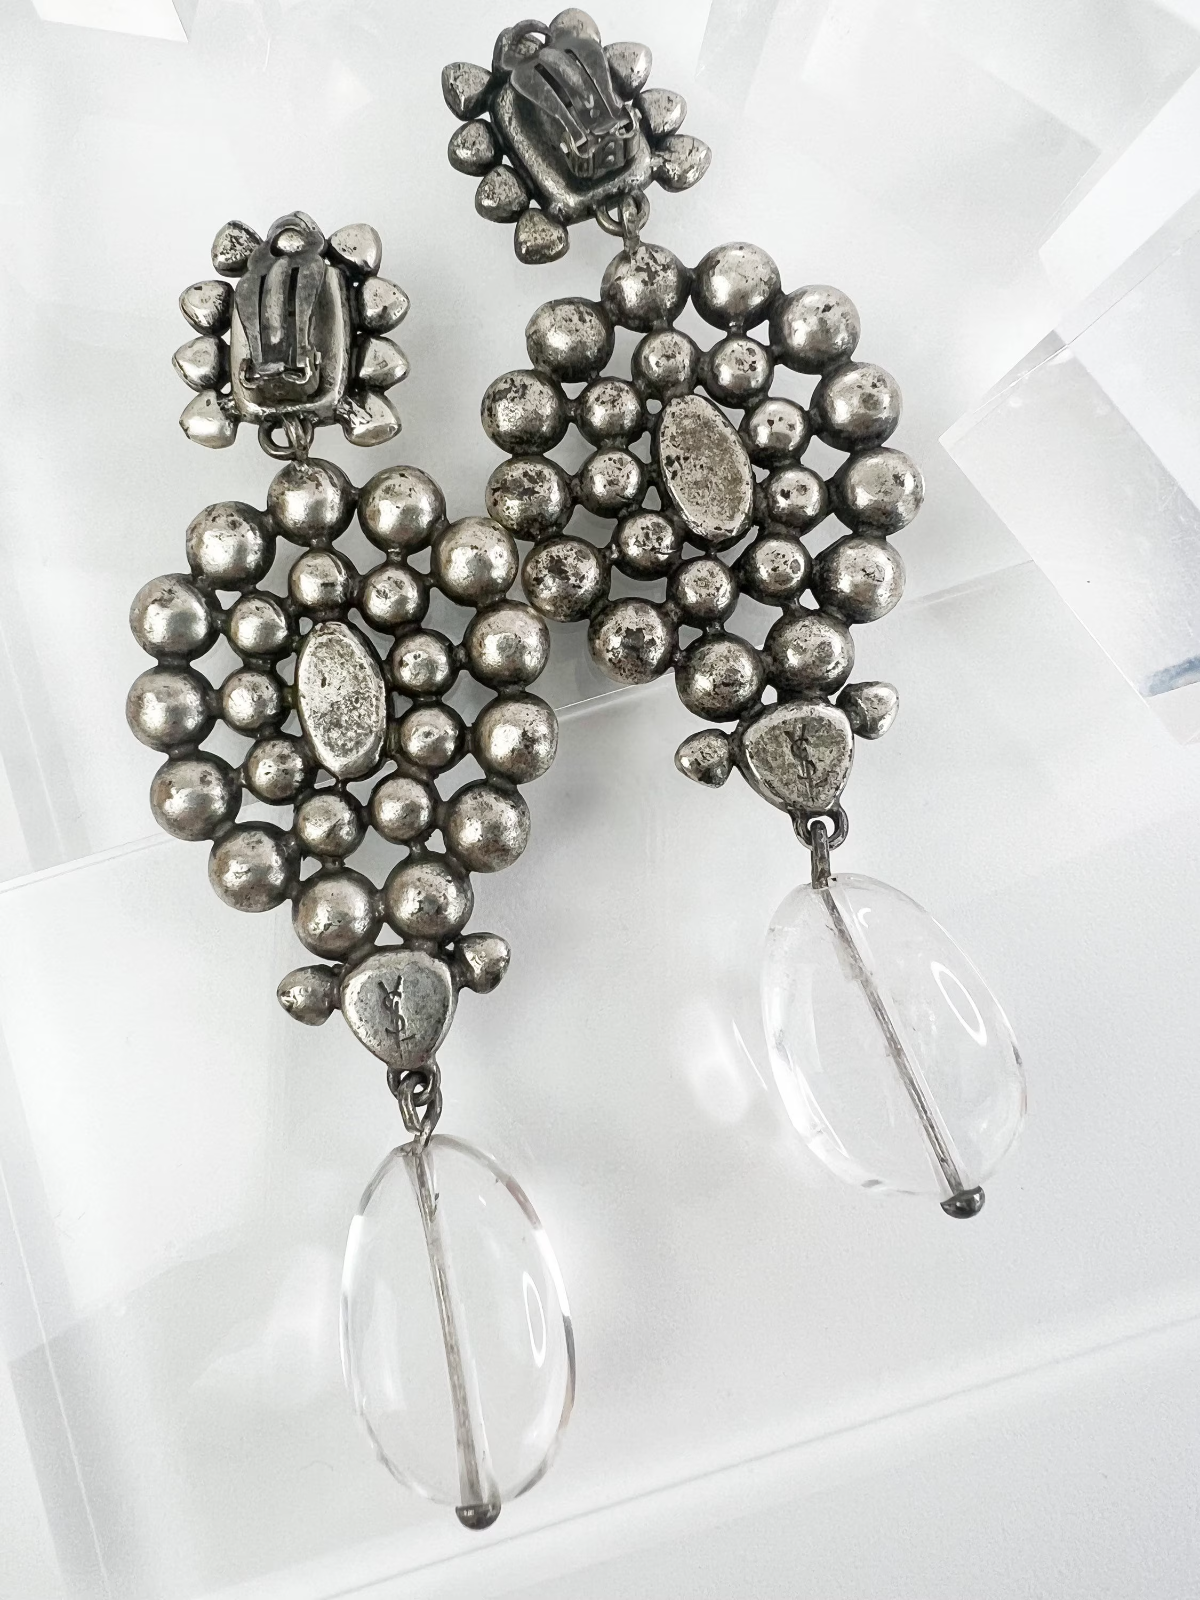 Vintage YSL Yves Saint Laurent Earrings, Tom Ford 2002 Earrings, Vintage Earrings Silver, Wedding Jewelry, Earrings dangle, Earrings large